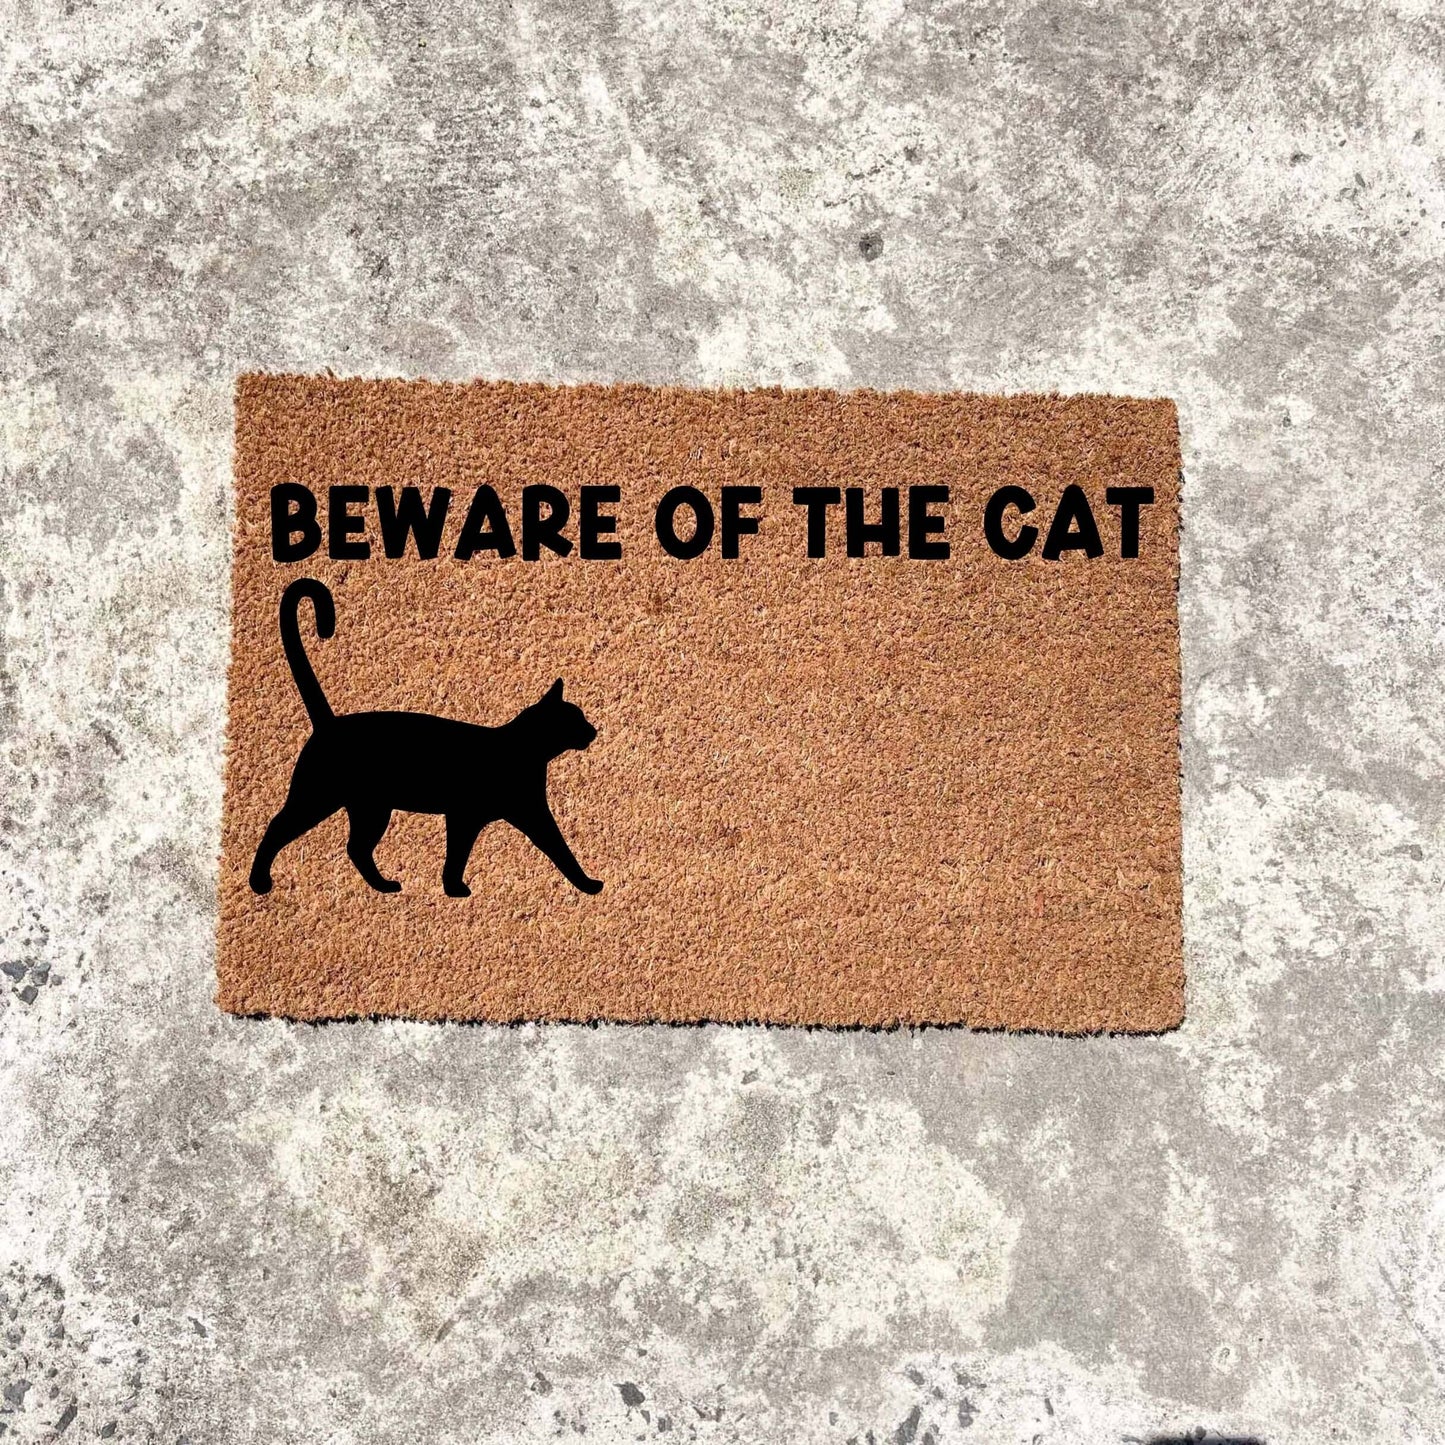 Beware of the cat doormat, custom doormat, personalised doormat, door mat